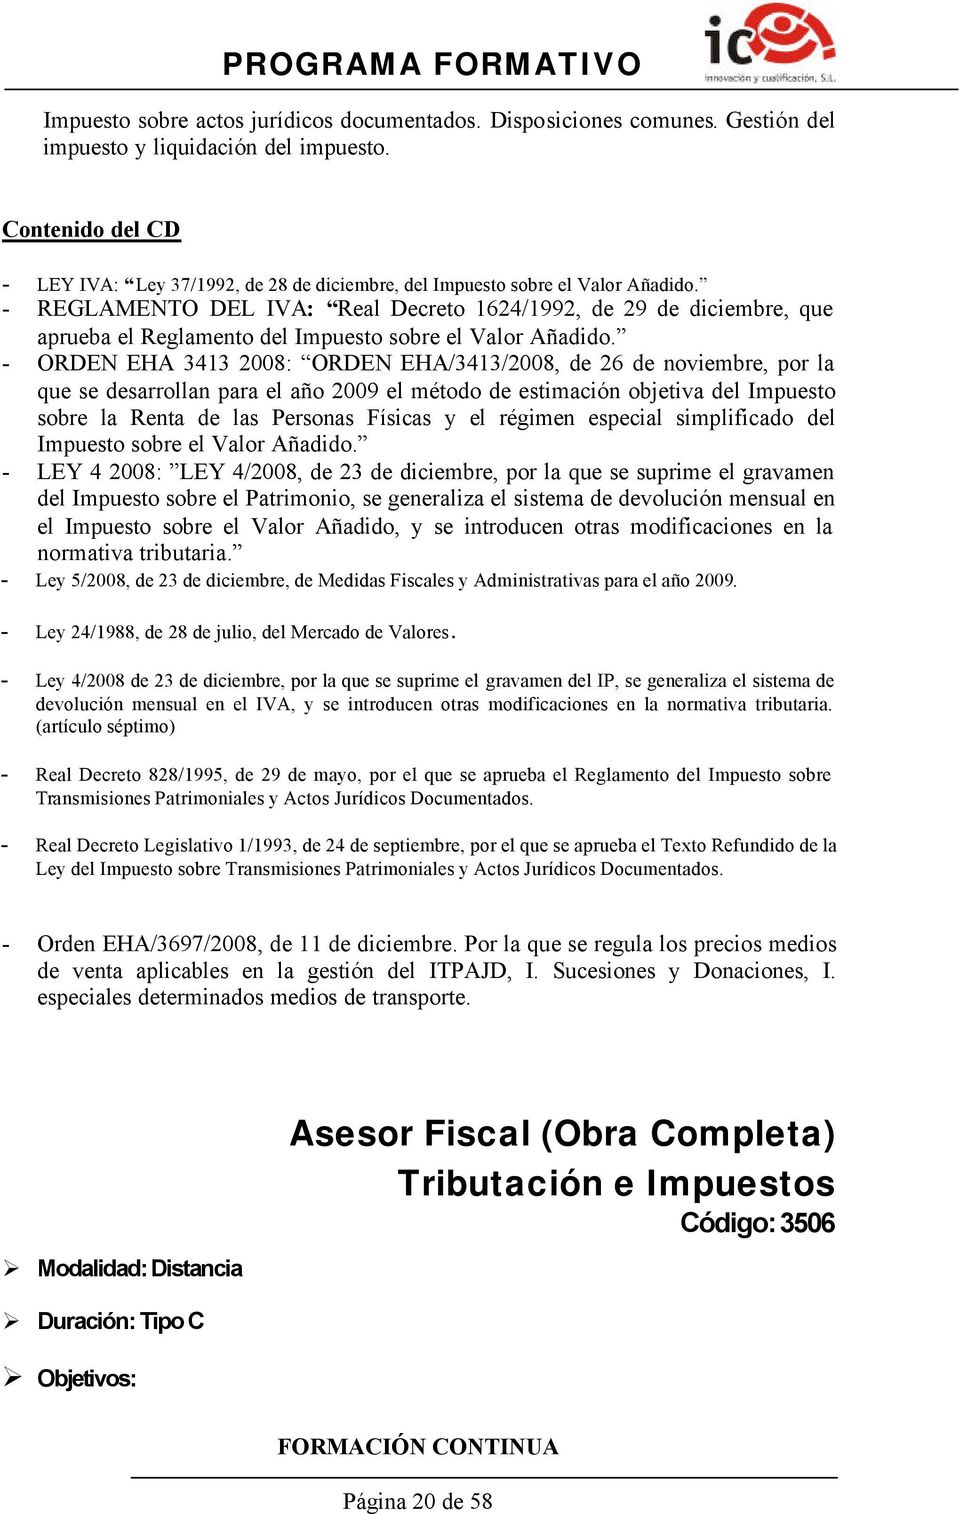 - REGLAMENTO DEL IVA: Real Decreto 1624/1992, de 29 de diciembre, que aprueba el Reglamento del Impuesto sobre el Valor Añadido.